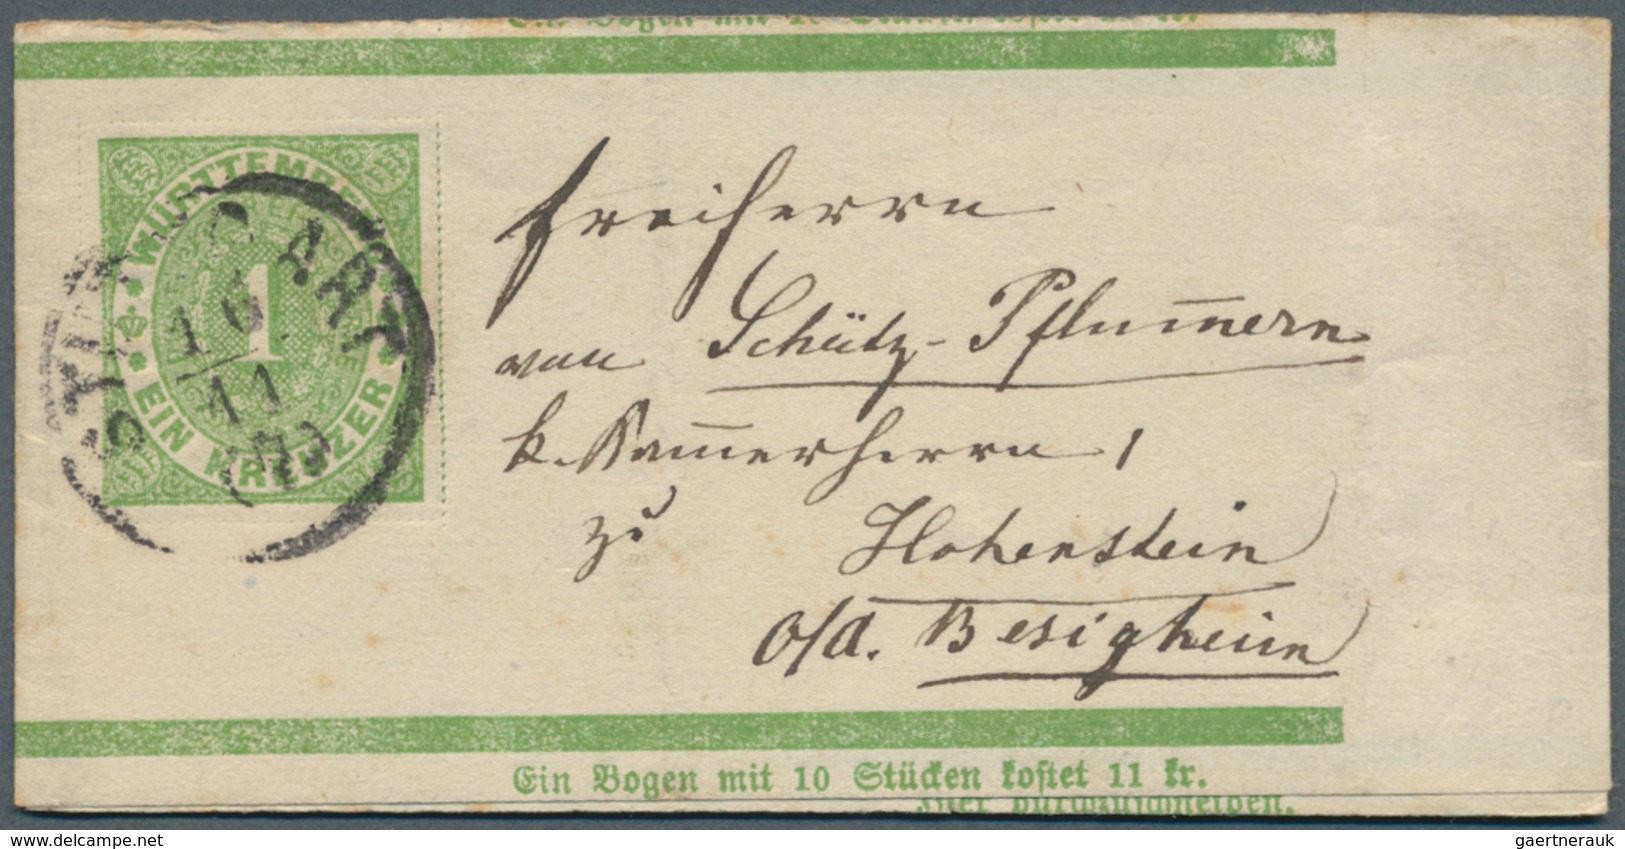 31364 Württemberg - Ganzsachen: 1862/1920, sehr umfangreiche Sammlung ab U 1 bis DPB 67, insgesamt 807 nur